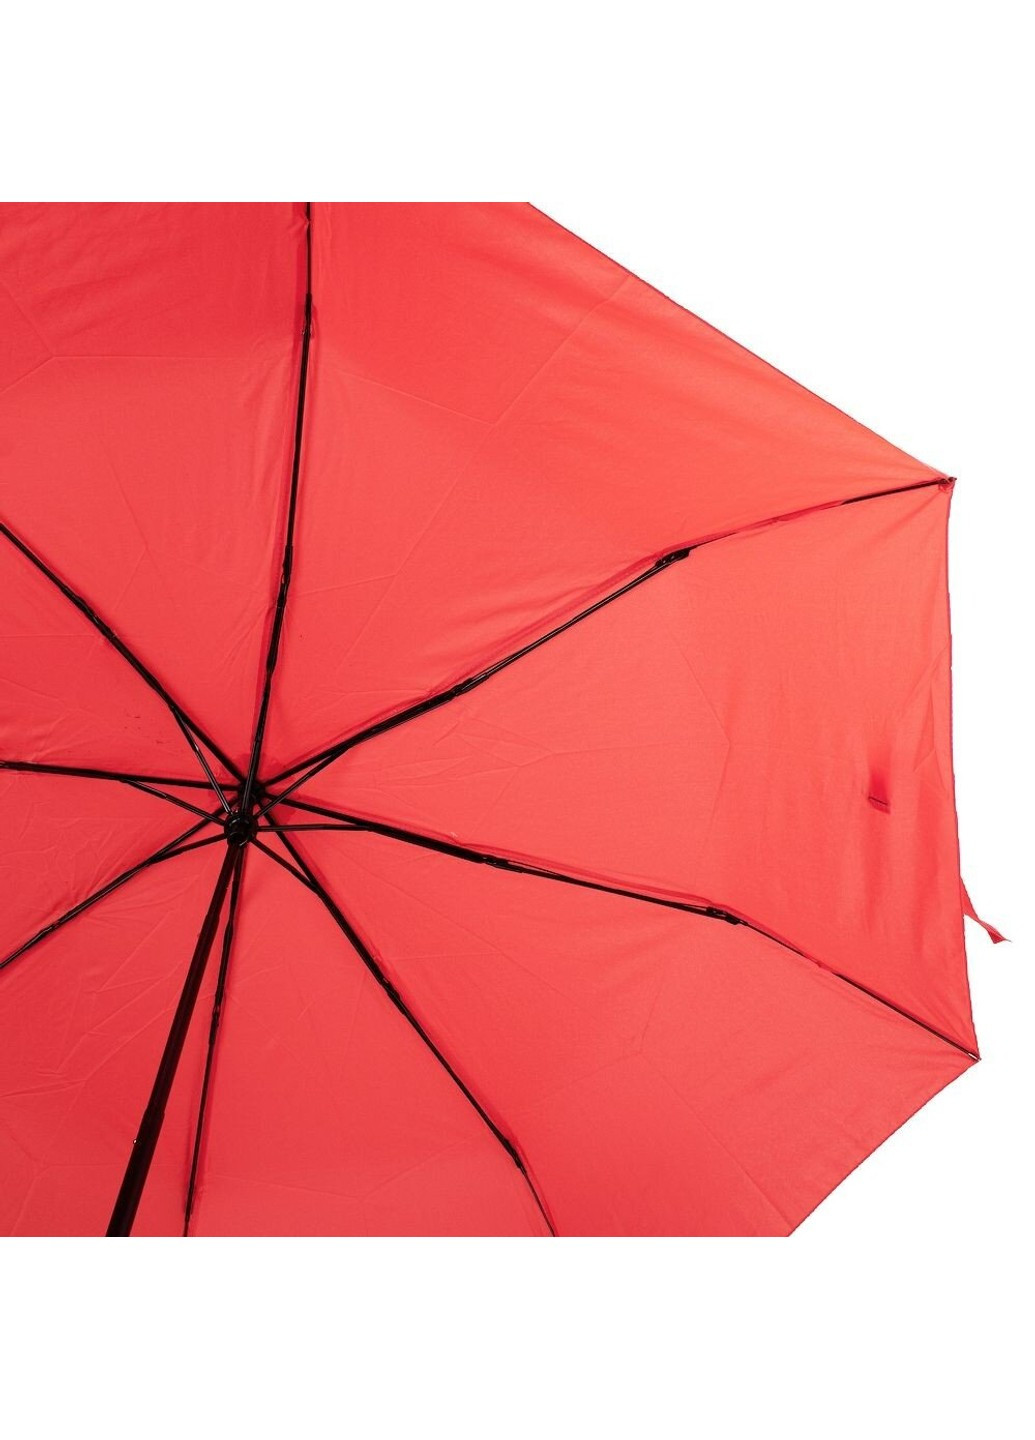 Механический женский зонтик ZAR3512-7 Art rain (263135779)